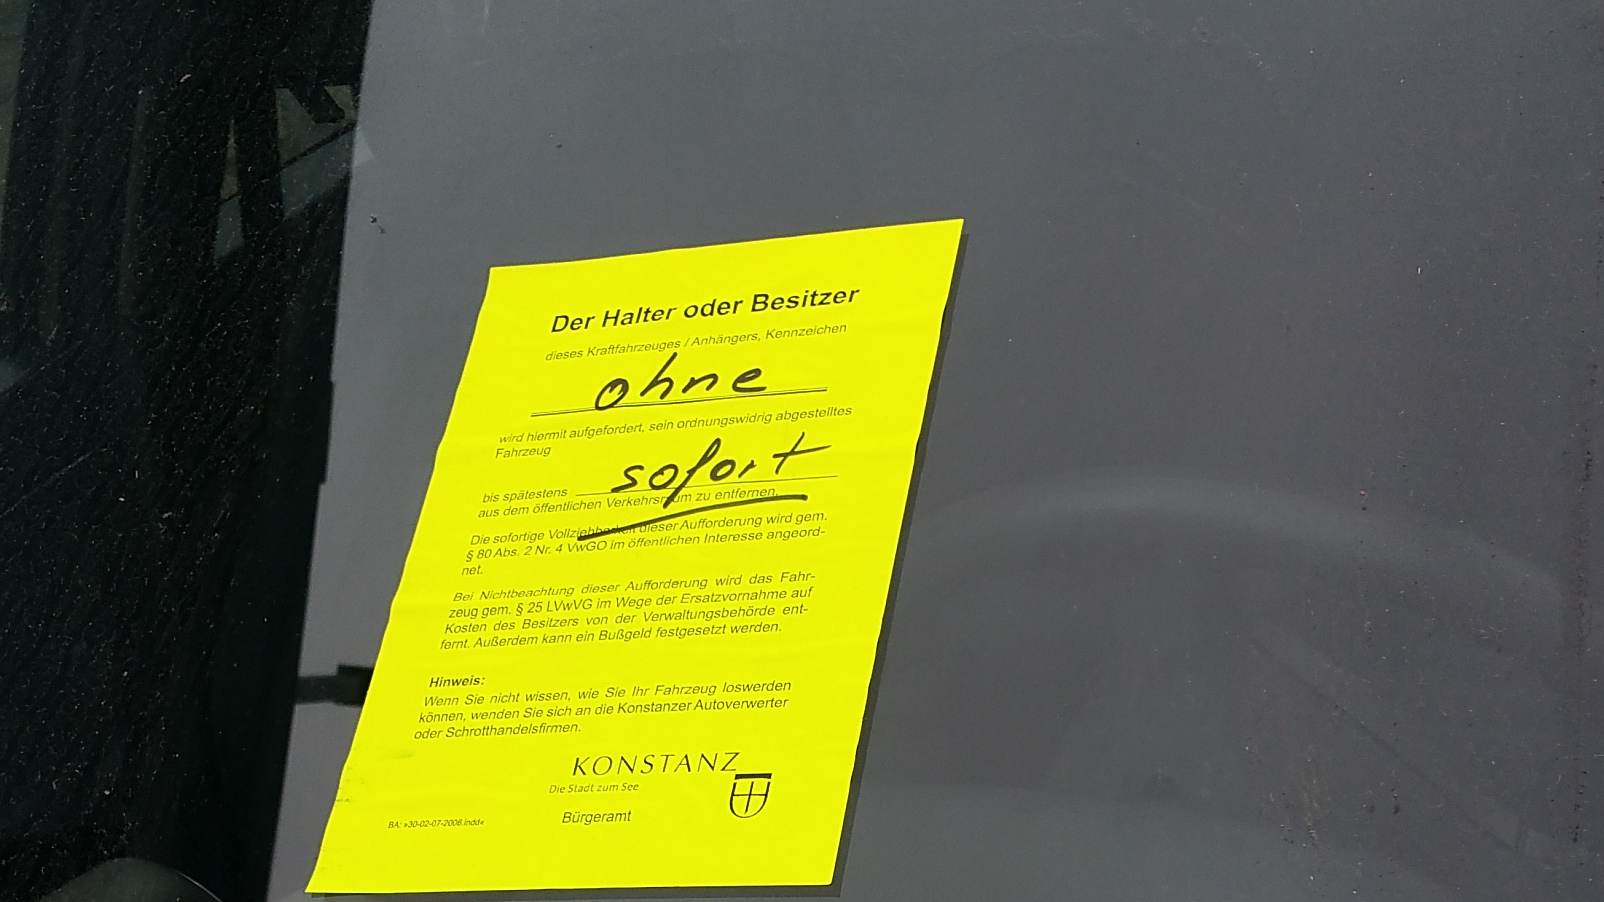 neu mit GELBEM Zettel "sofort entfernen" der Stadt, das Auto ohne Kennzeichen, jetzt seit 8 Wochen auf dem Kurzparkplatz